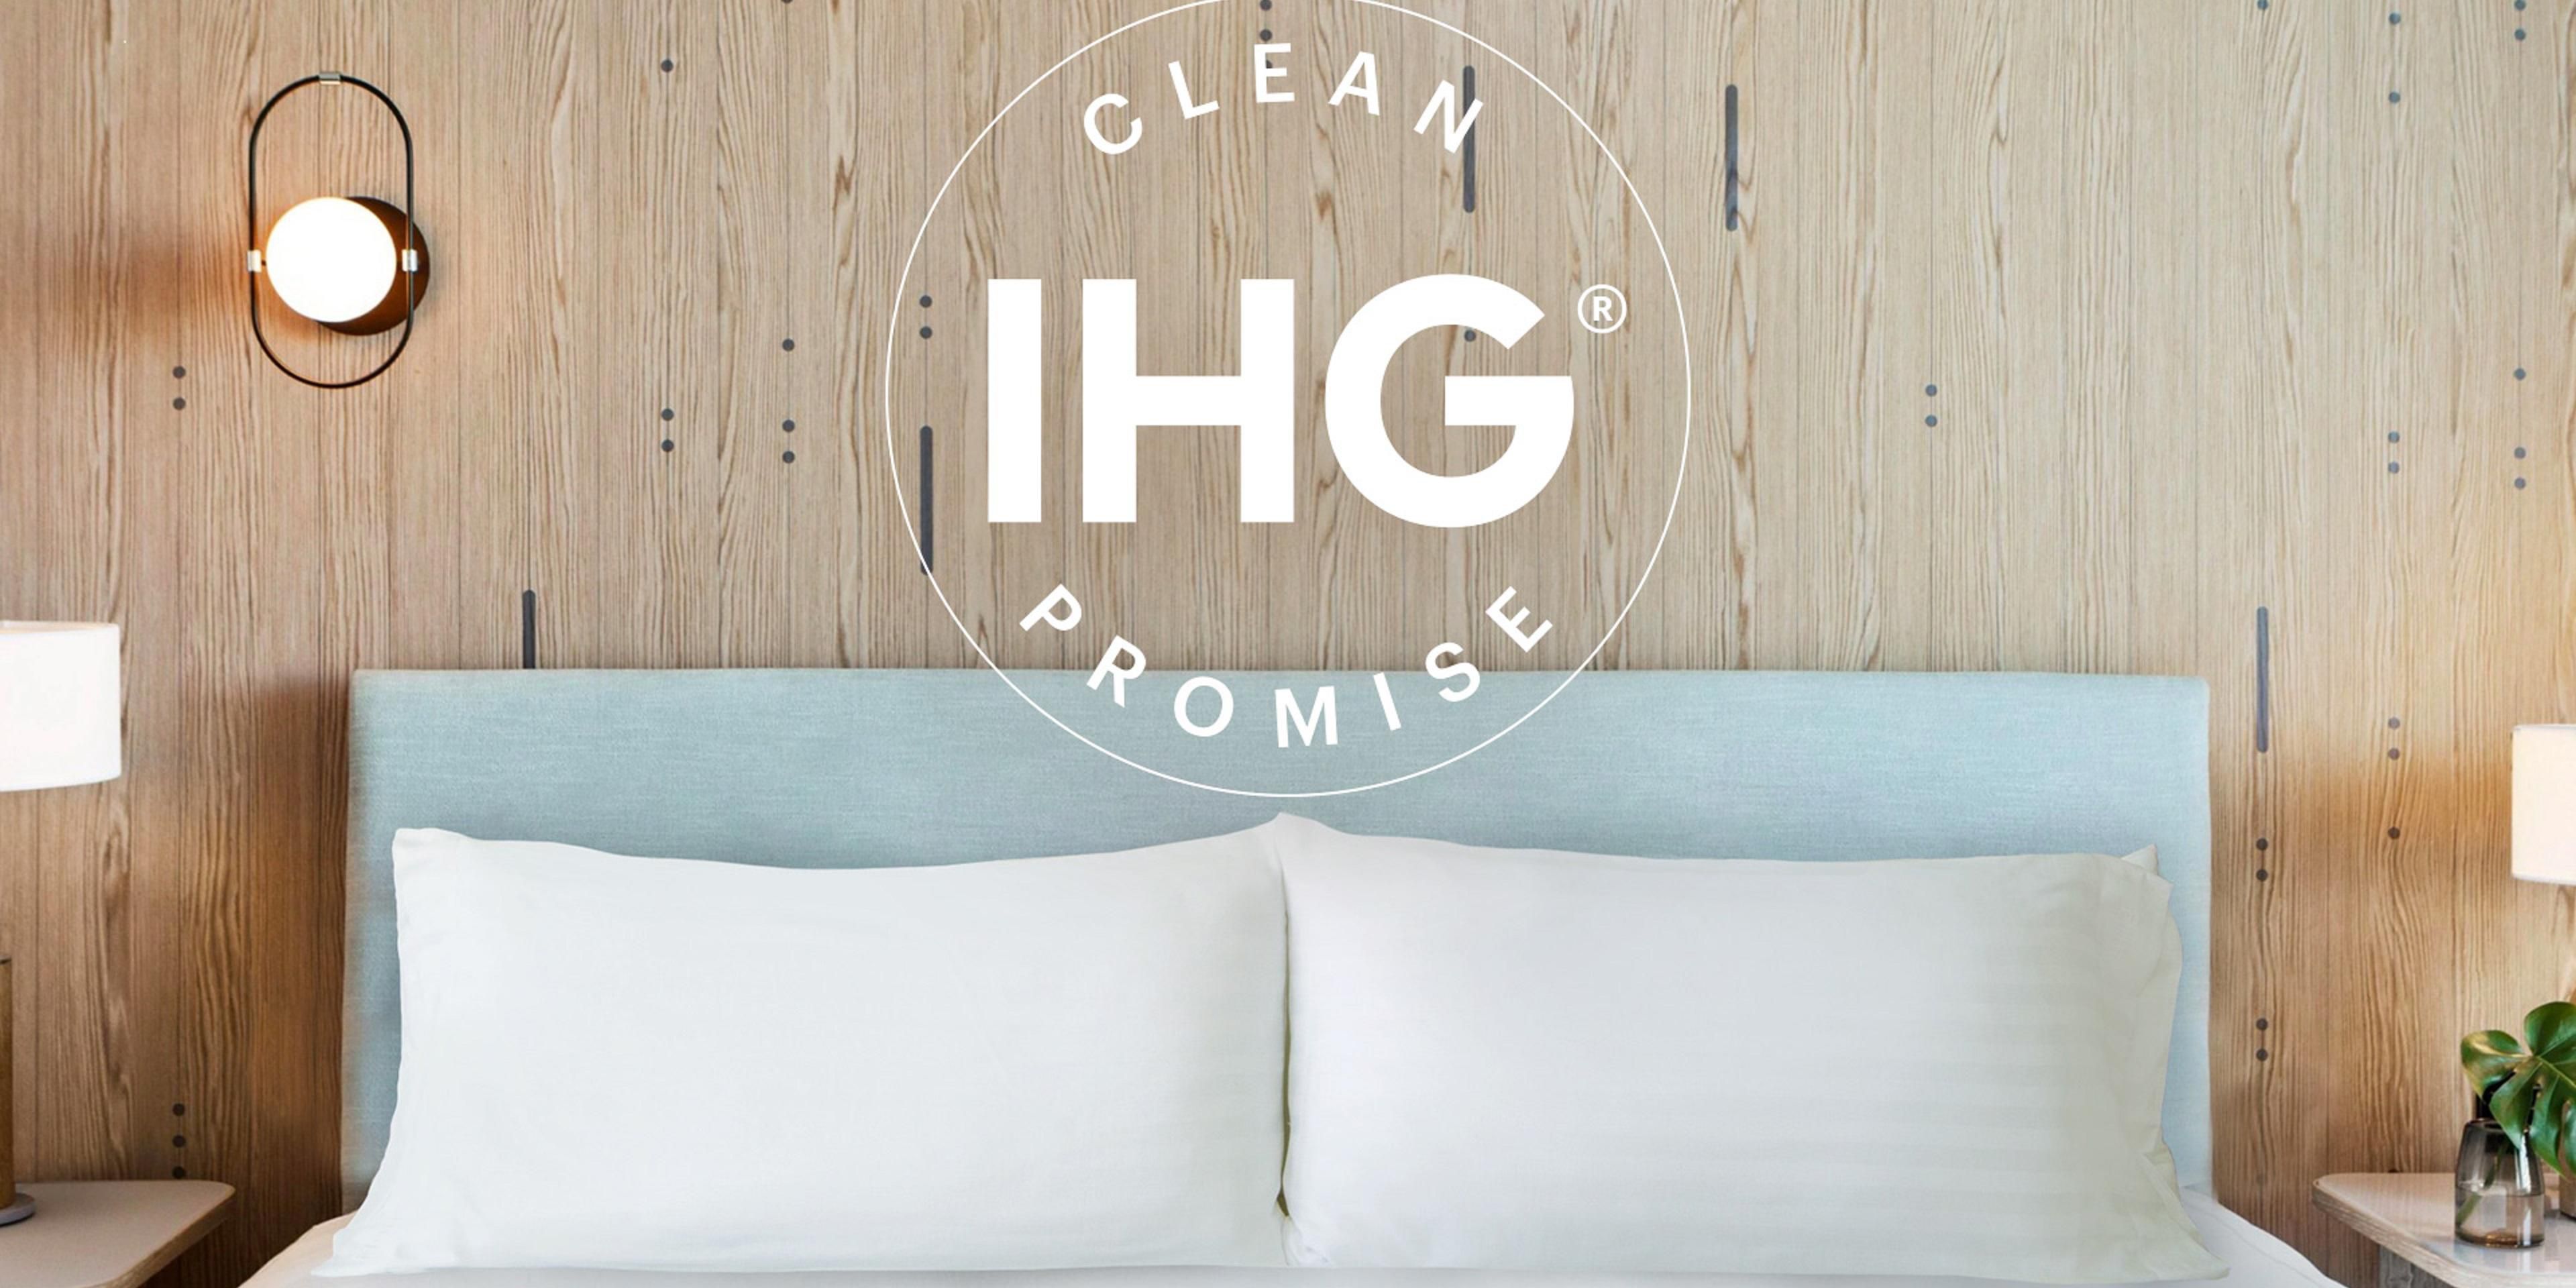 IHG tiene un compromiso con procedimientos de limpieza rigurosos. El programa IHG Way of Clean ahora se está ampliando con protocolos COVID-19 adicionales y mejores prácticas.